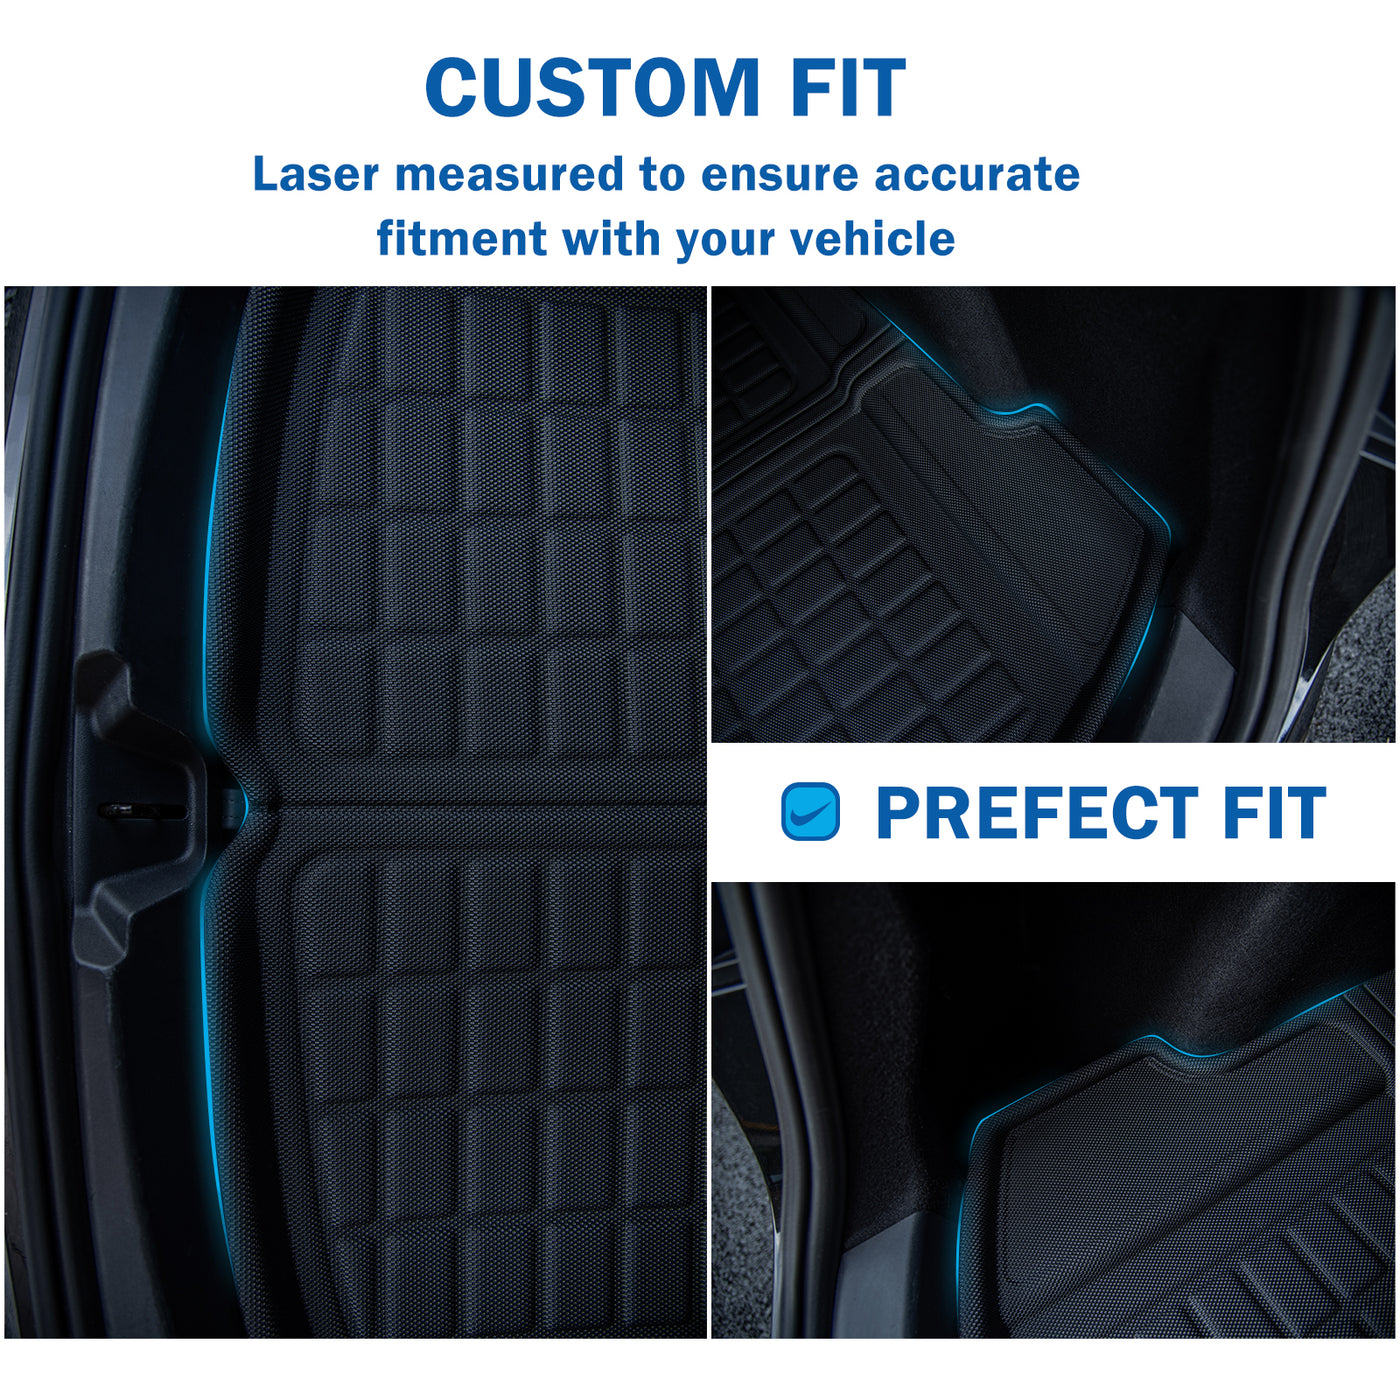 Turoaz Floor Mats Fit For Tesla Model Y 2021up, Interior Accessories (